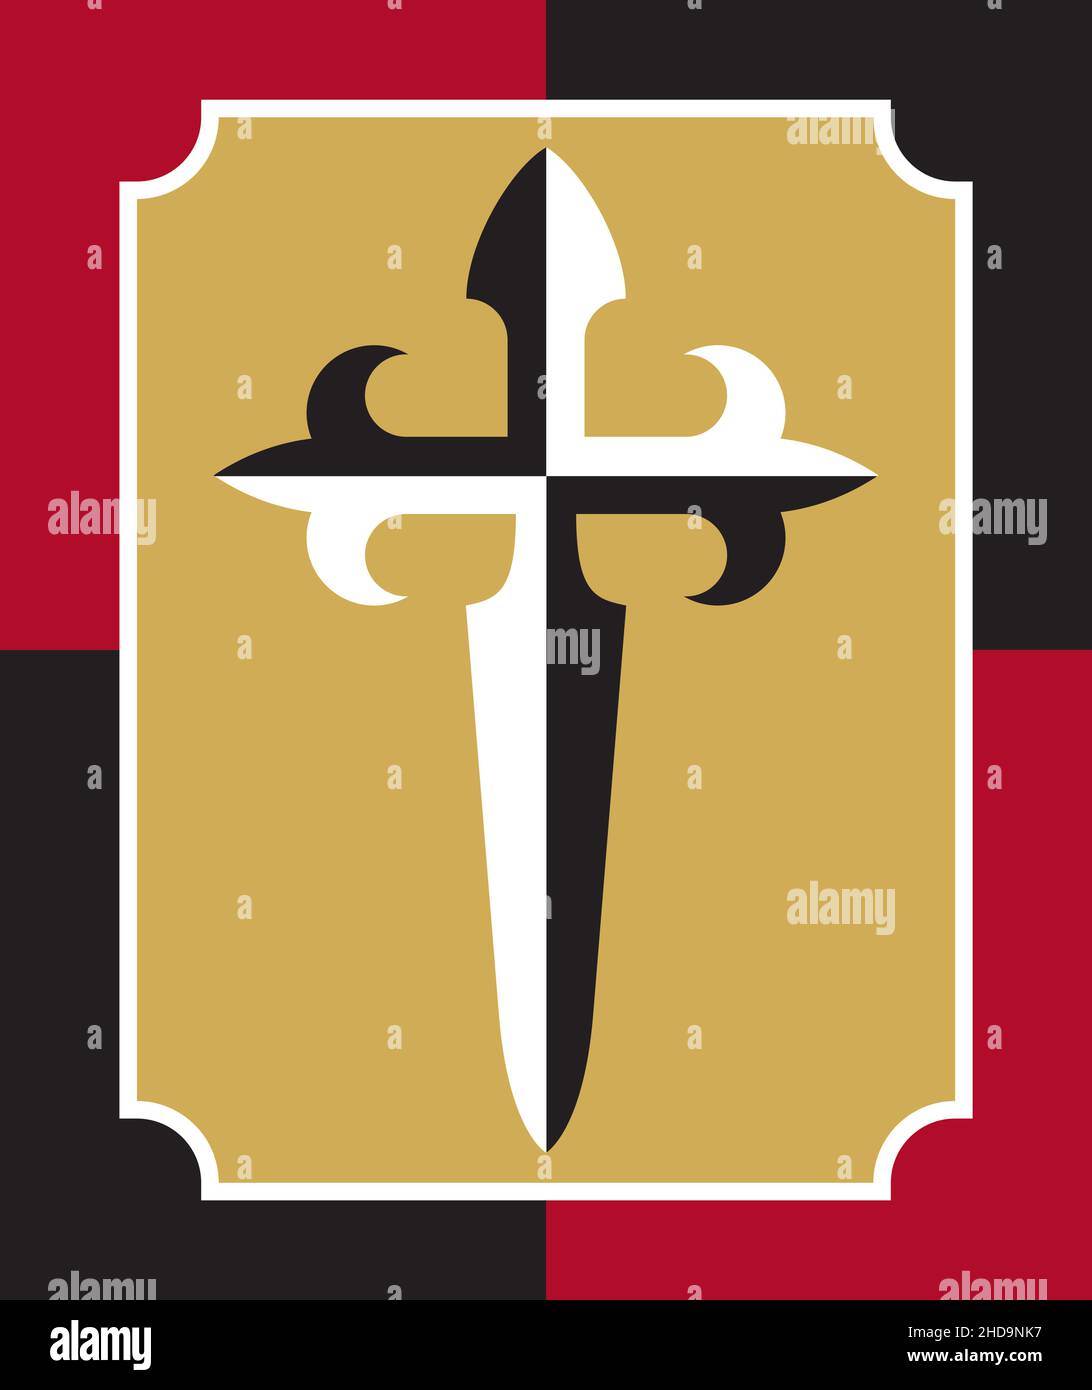 Croce di San Giacomo Cristiano badge o logo design. Illustrazione vettoriale della croce di San Giacomo che forma un pugnale o una spada. Illustrazione Vettoriale